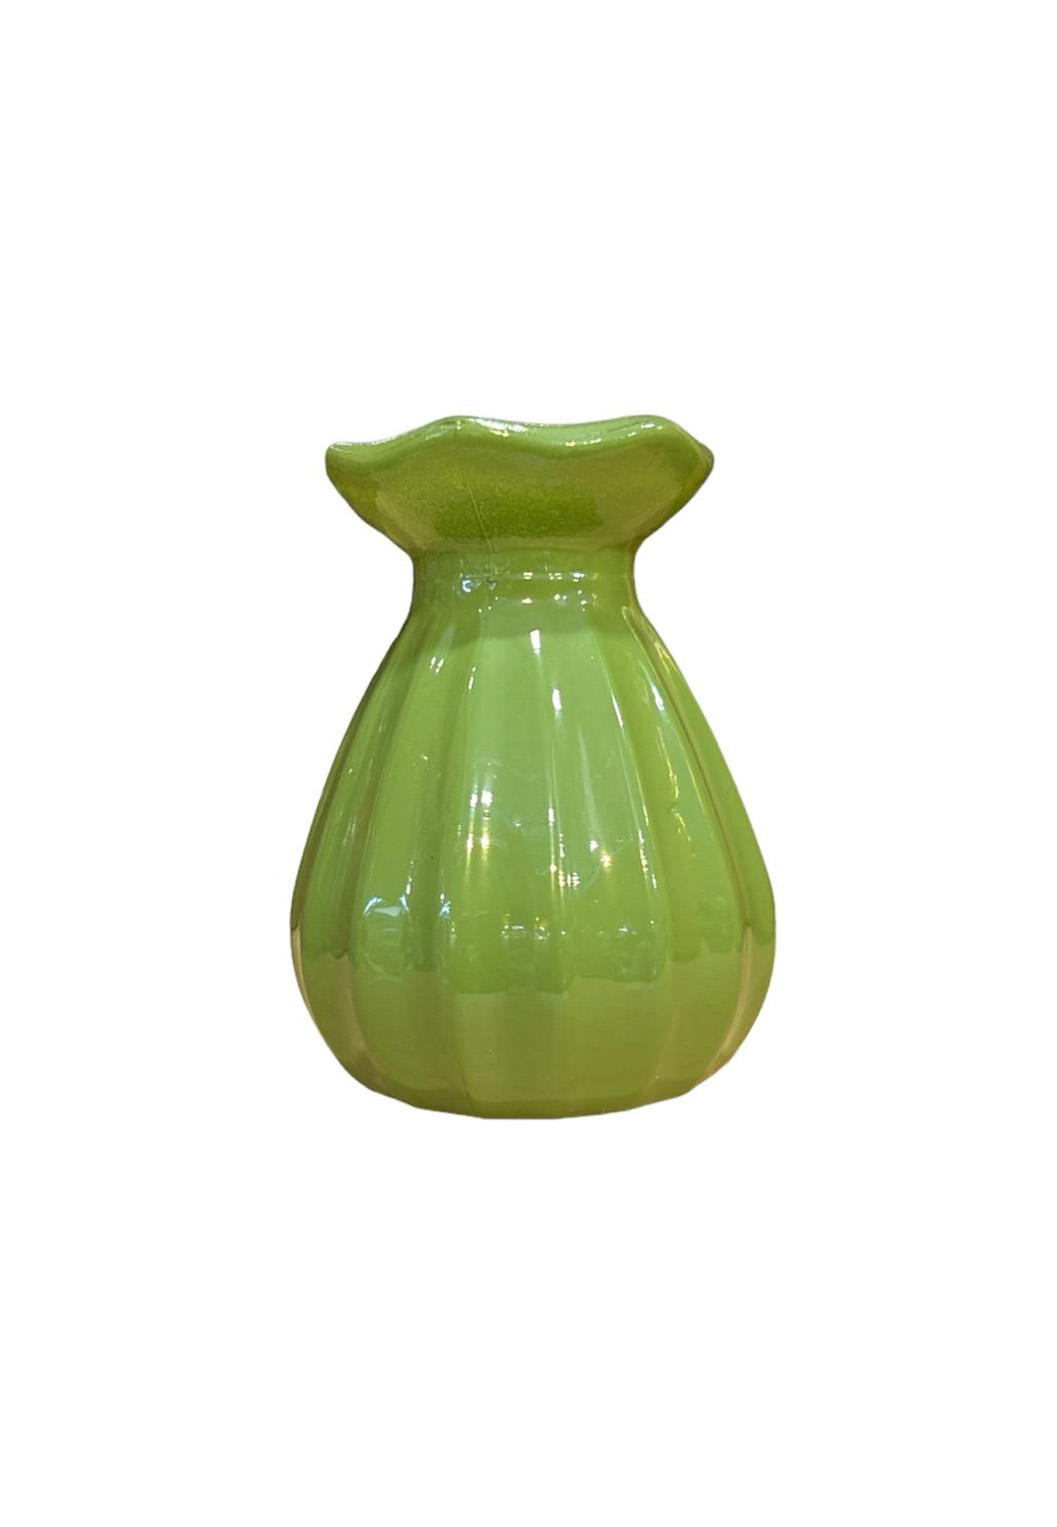 Klein glazen vaasje, kandelaar in appel groene kleur